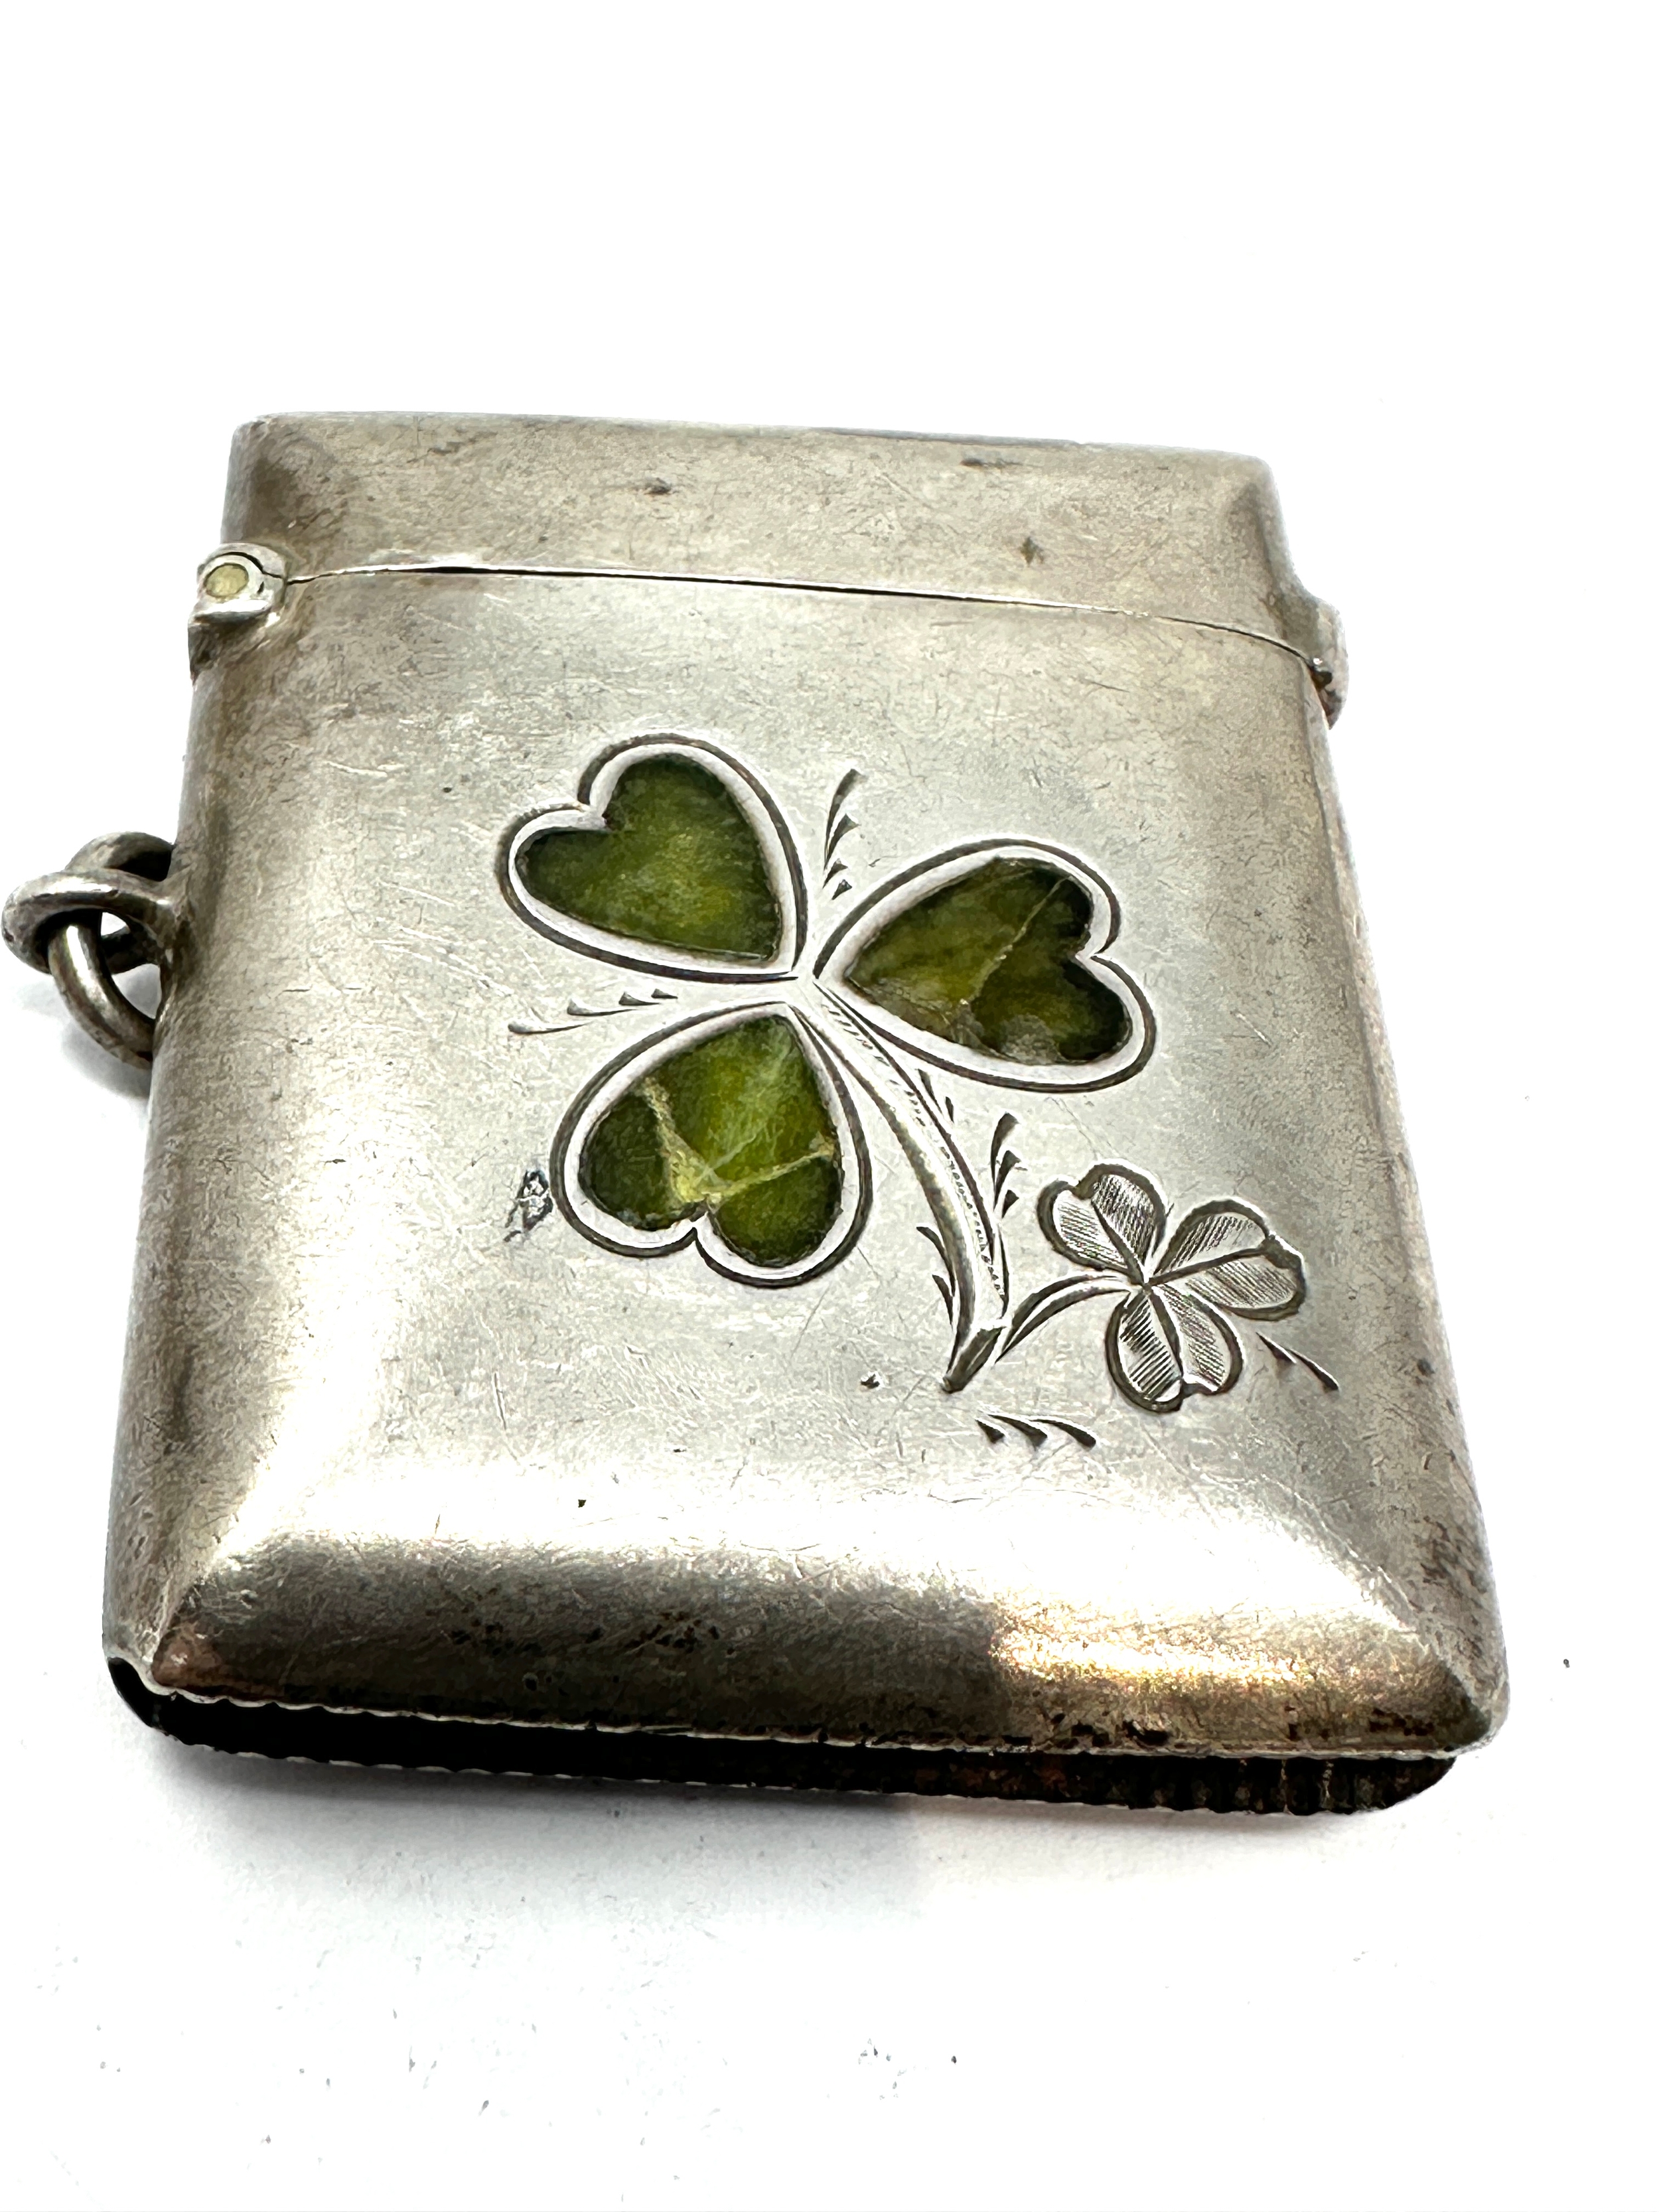 Antique silver inlaid clover leaf vesta case - Image 4 of 4